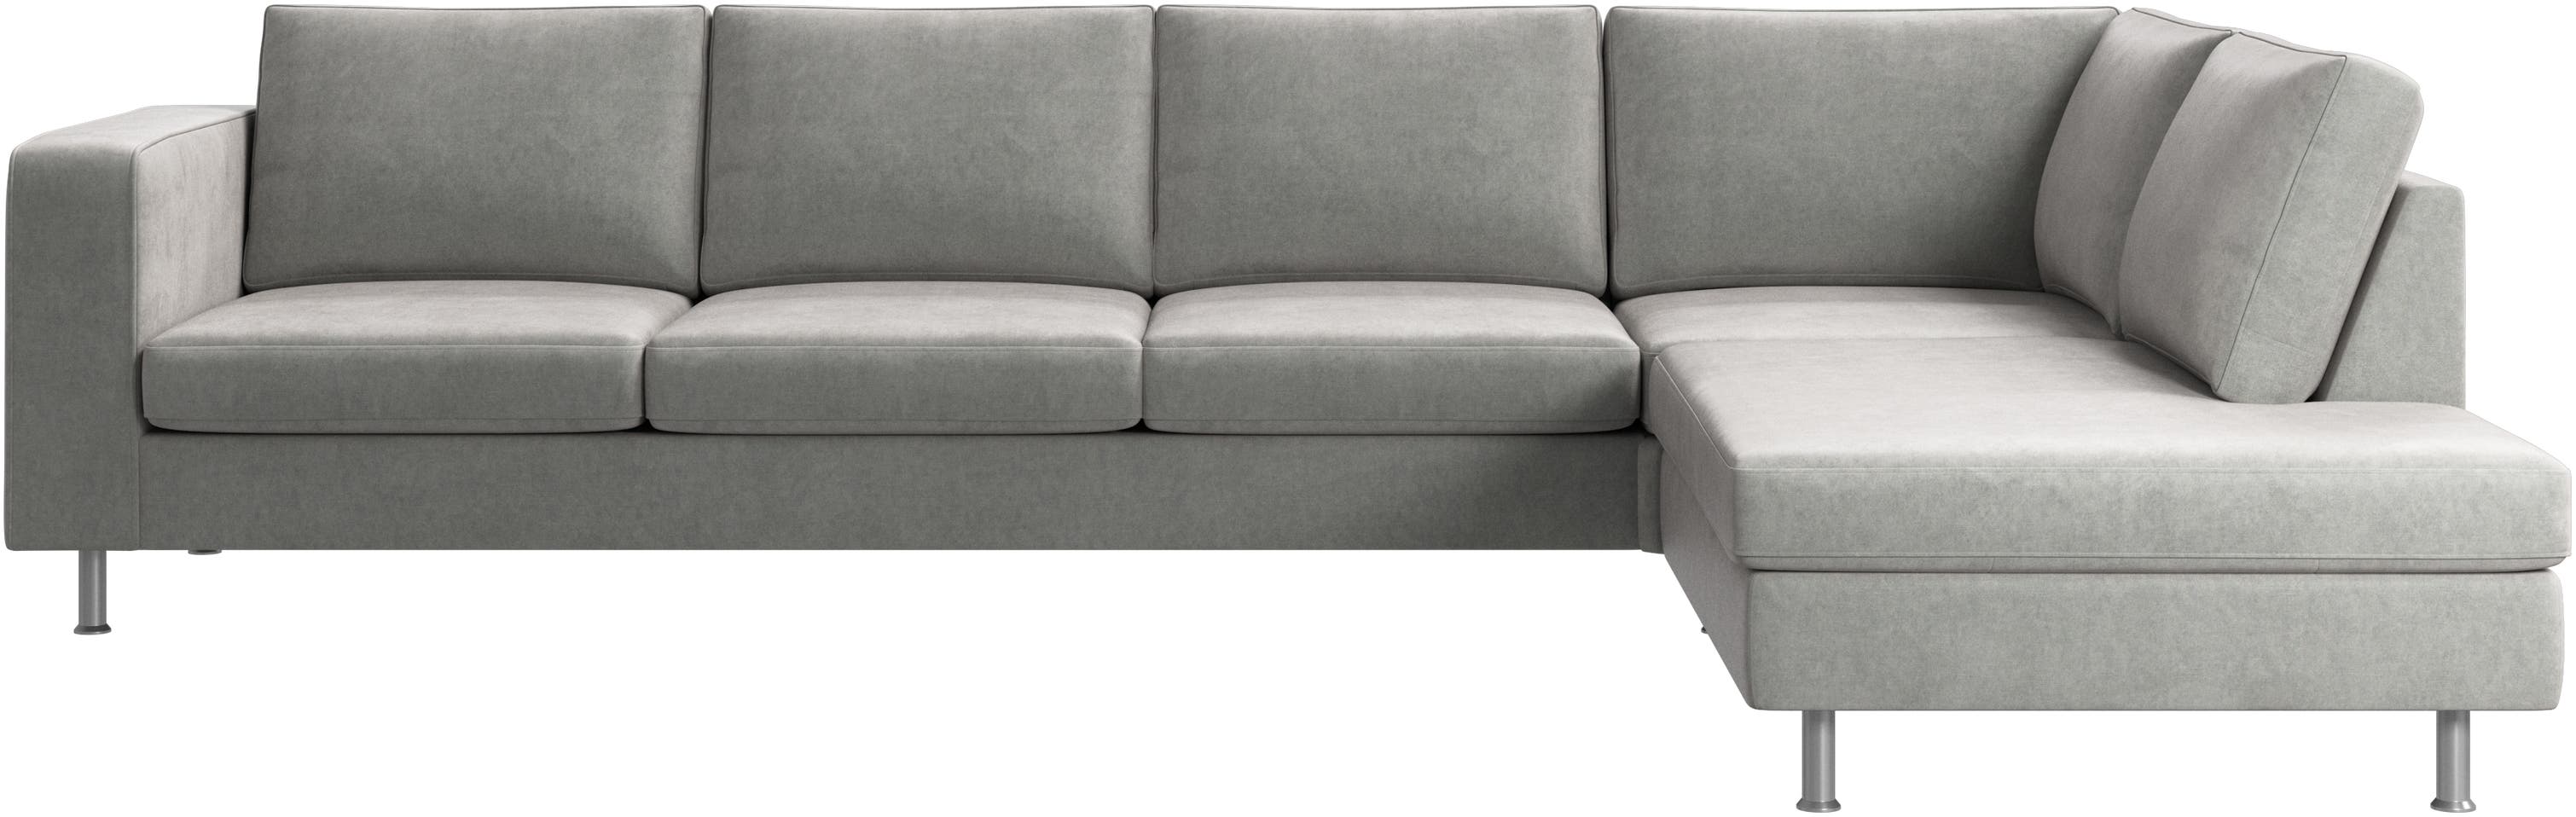 Indivi corner sofa with lounging unit